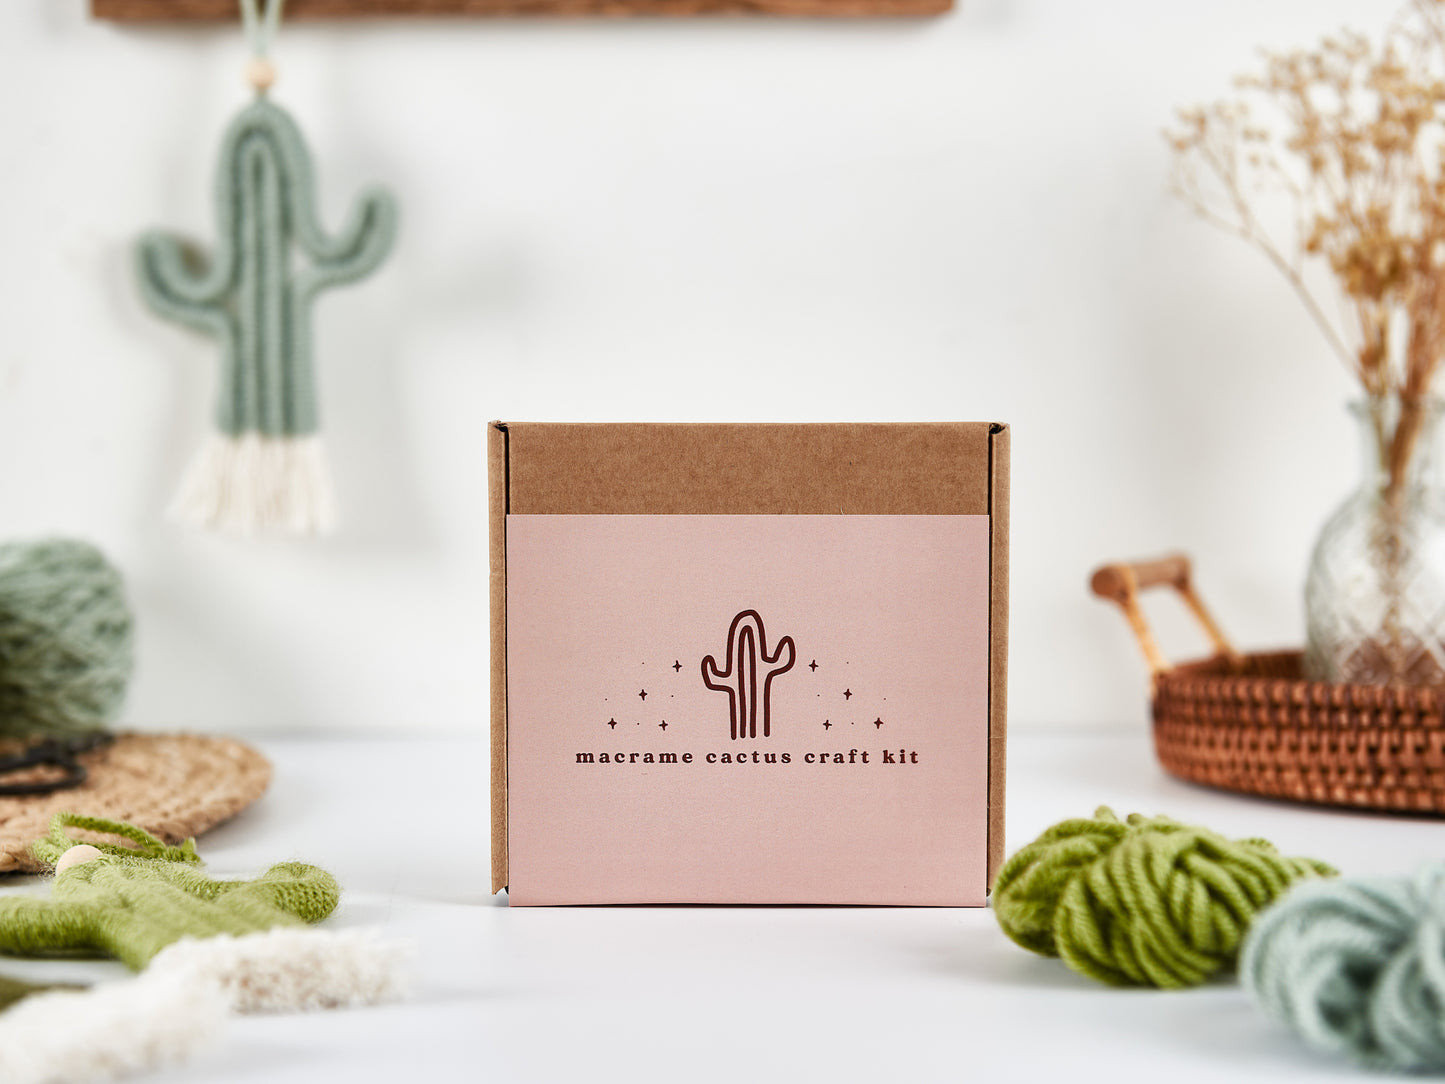 Make Your Own Macrame Cactus Craft Kit